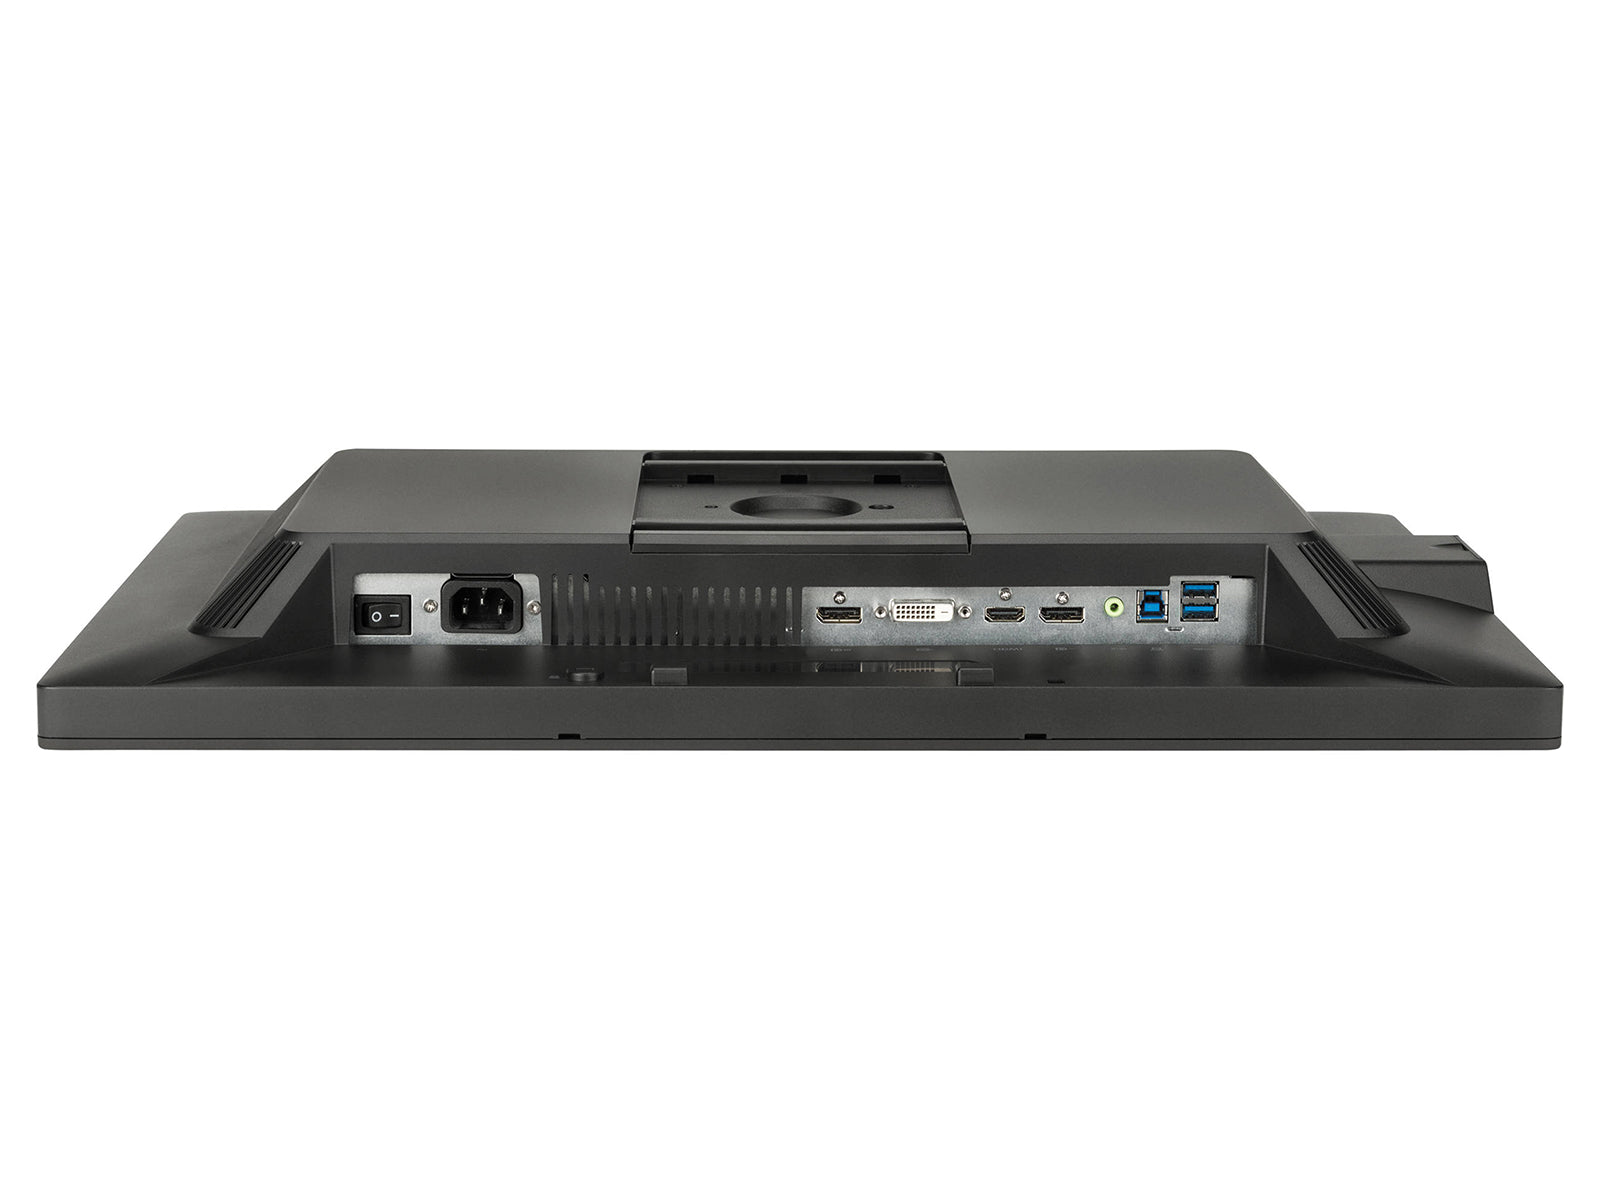 HP DreamColor Z24x G2 (1920x1200) WUXGA 24" LED Display Monitor (1JR59A8#ABA) Monitors.com 